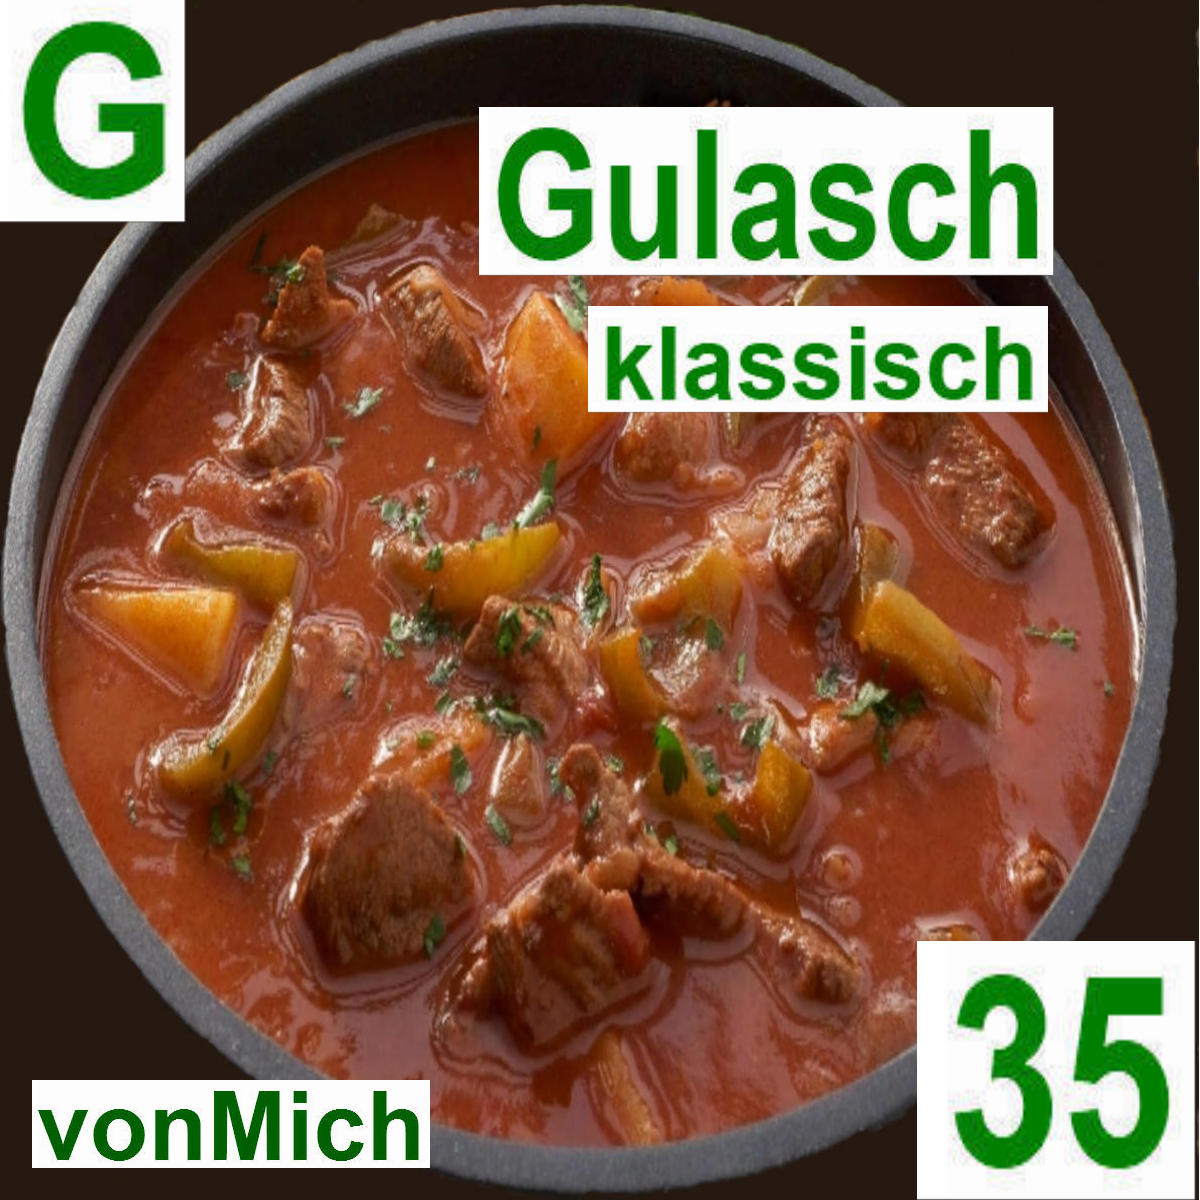 Gulasch klassisch | vonMich